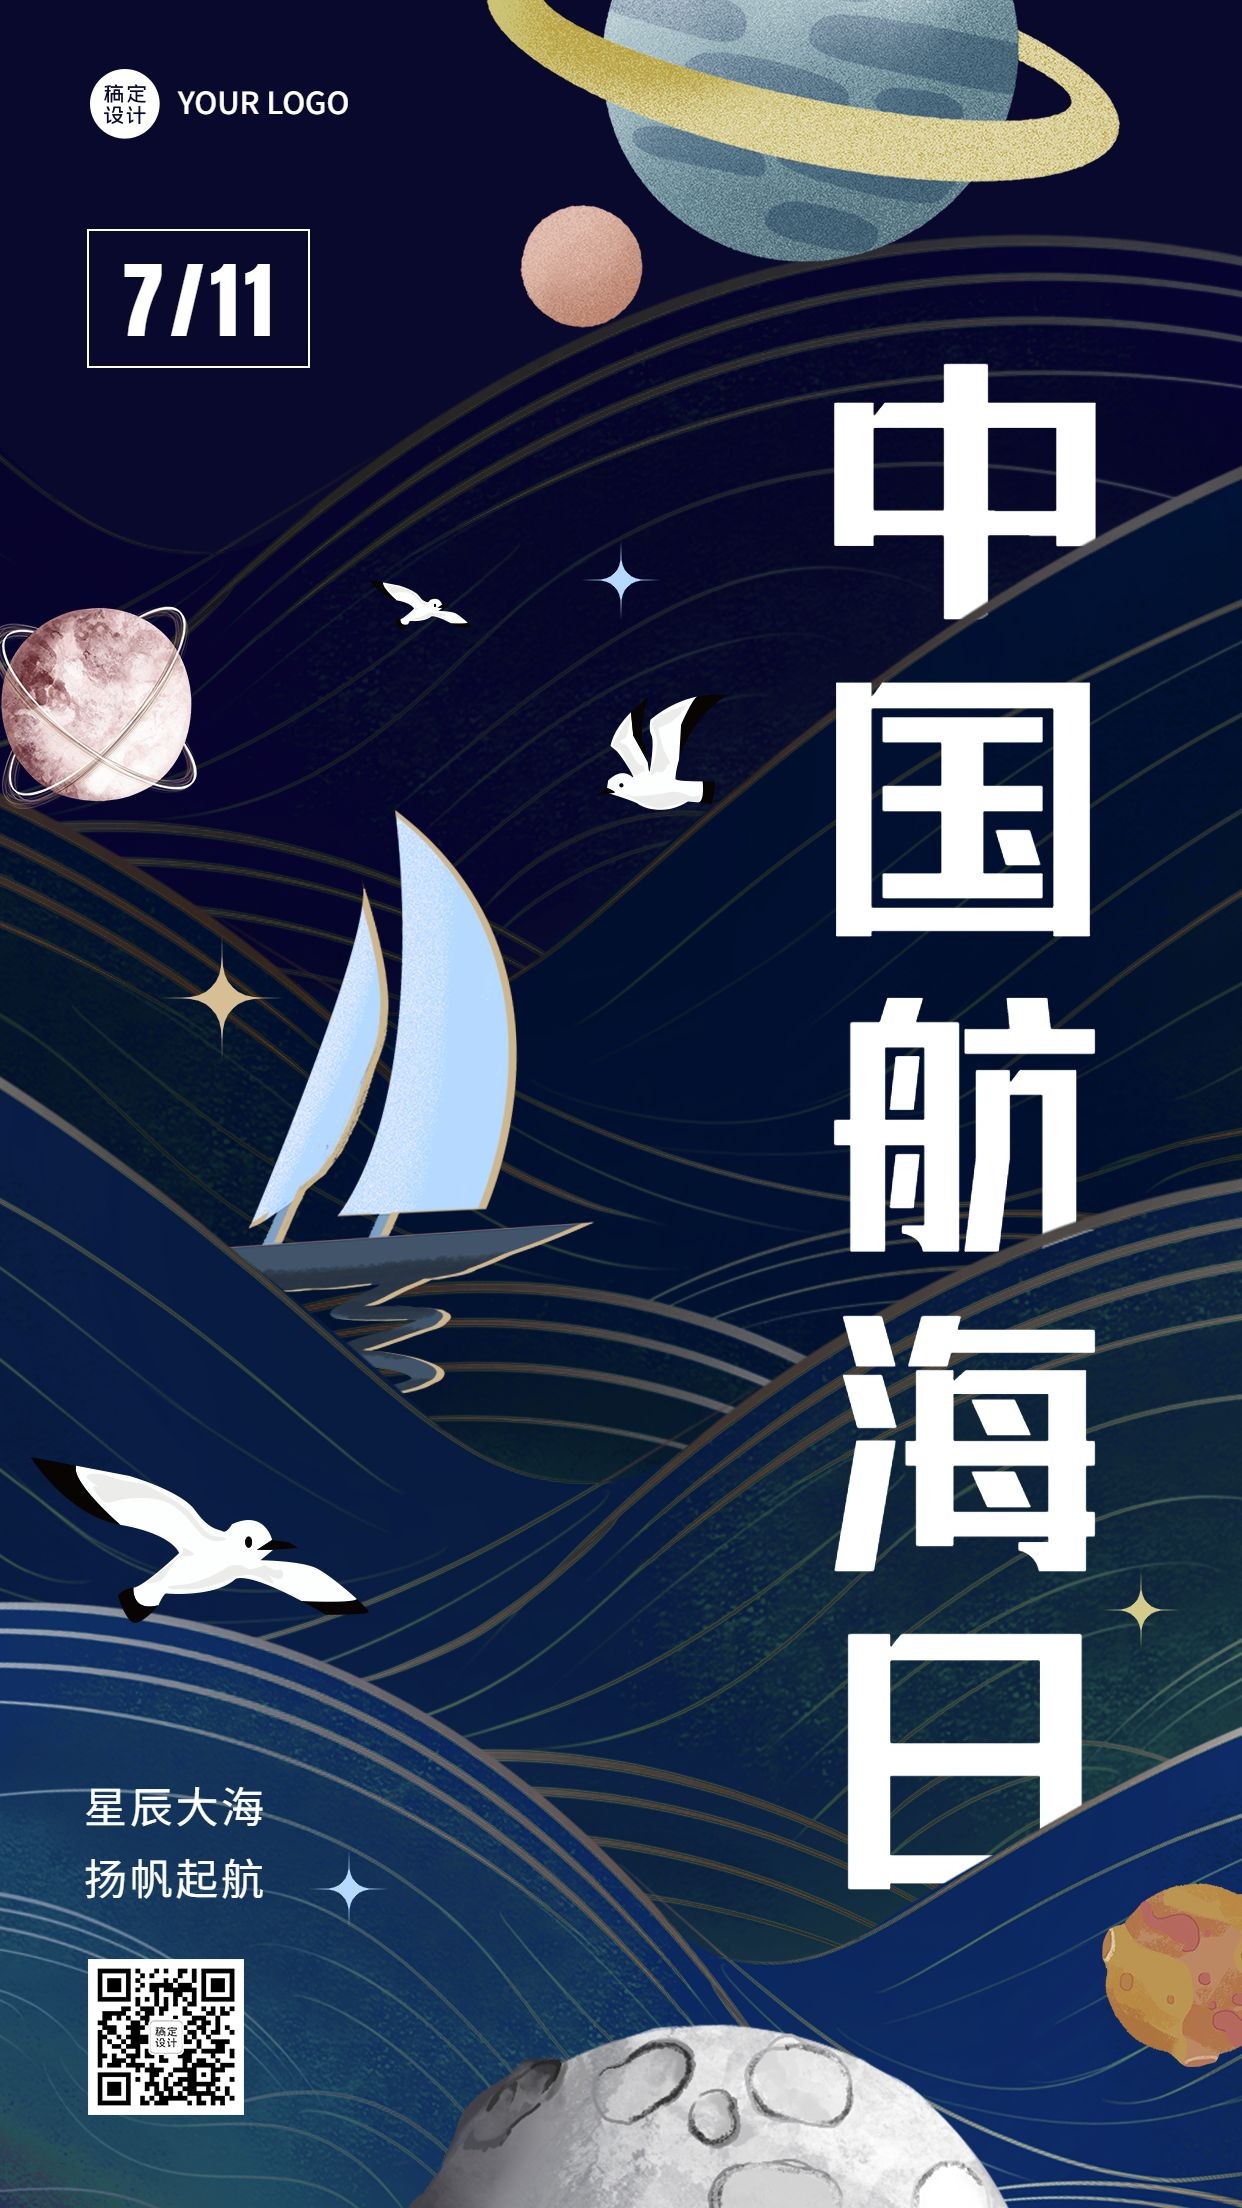 中国航海日节日宣传插画手机海报